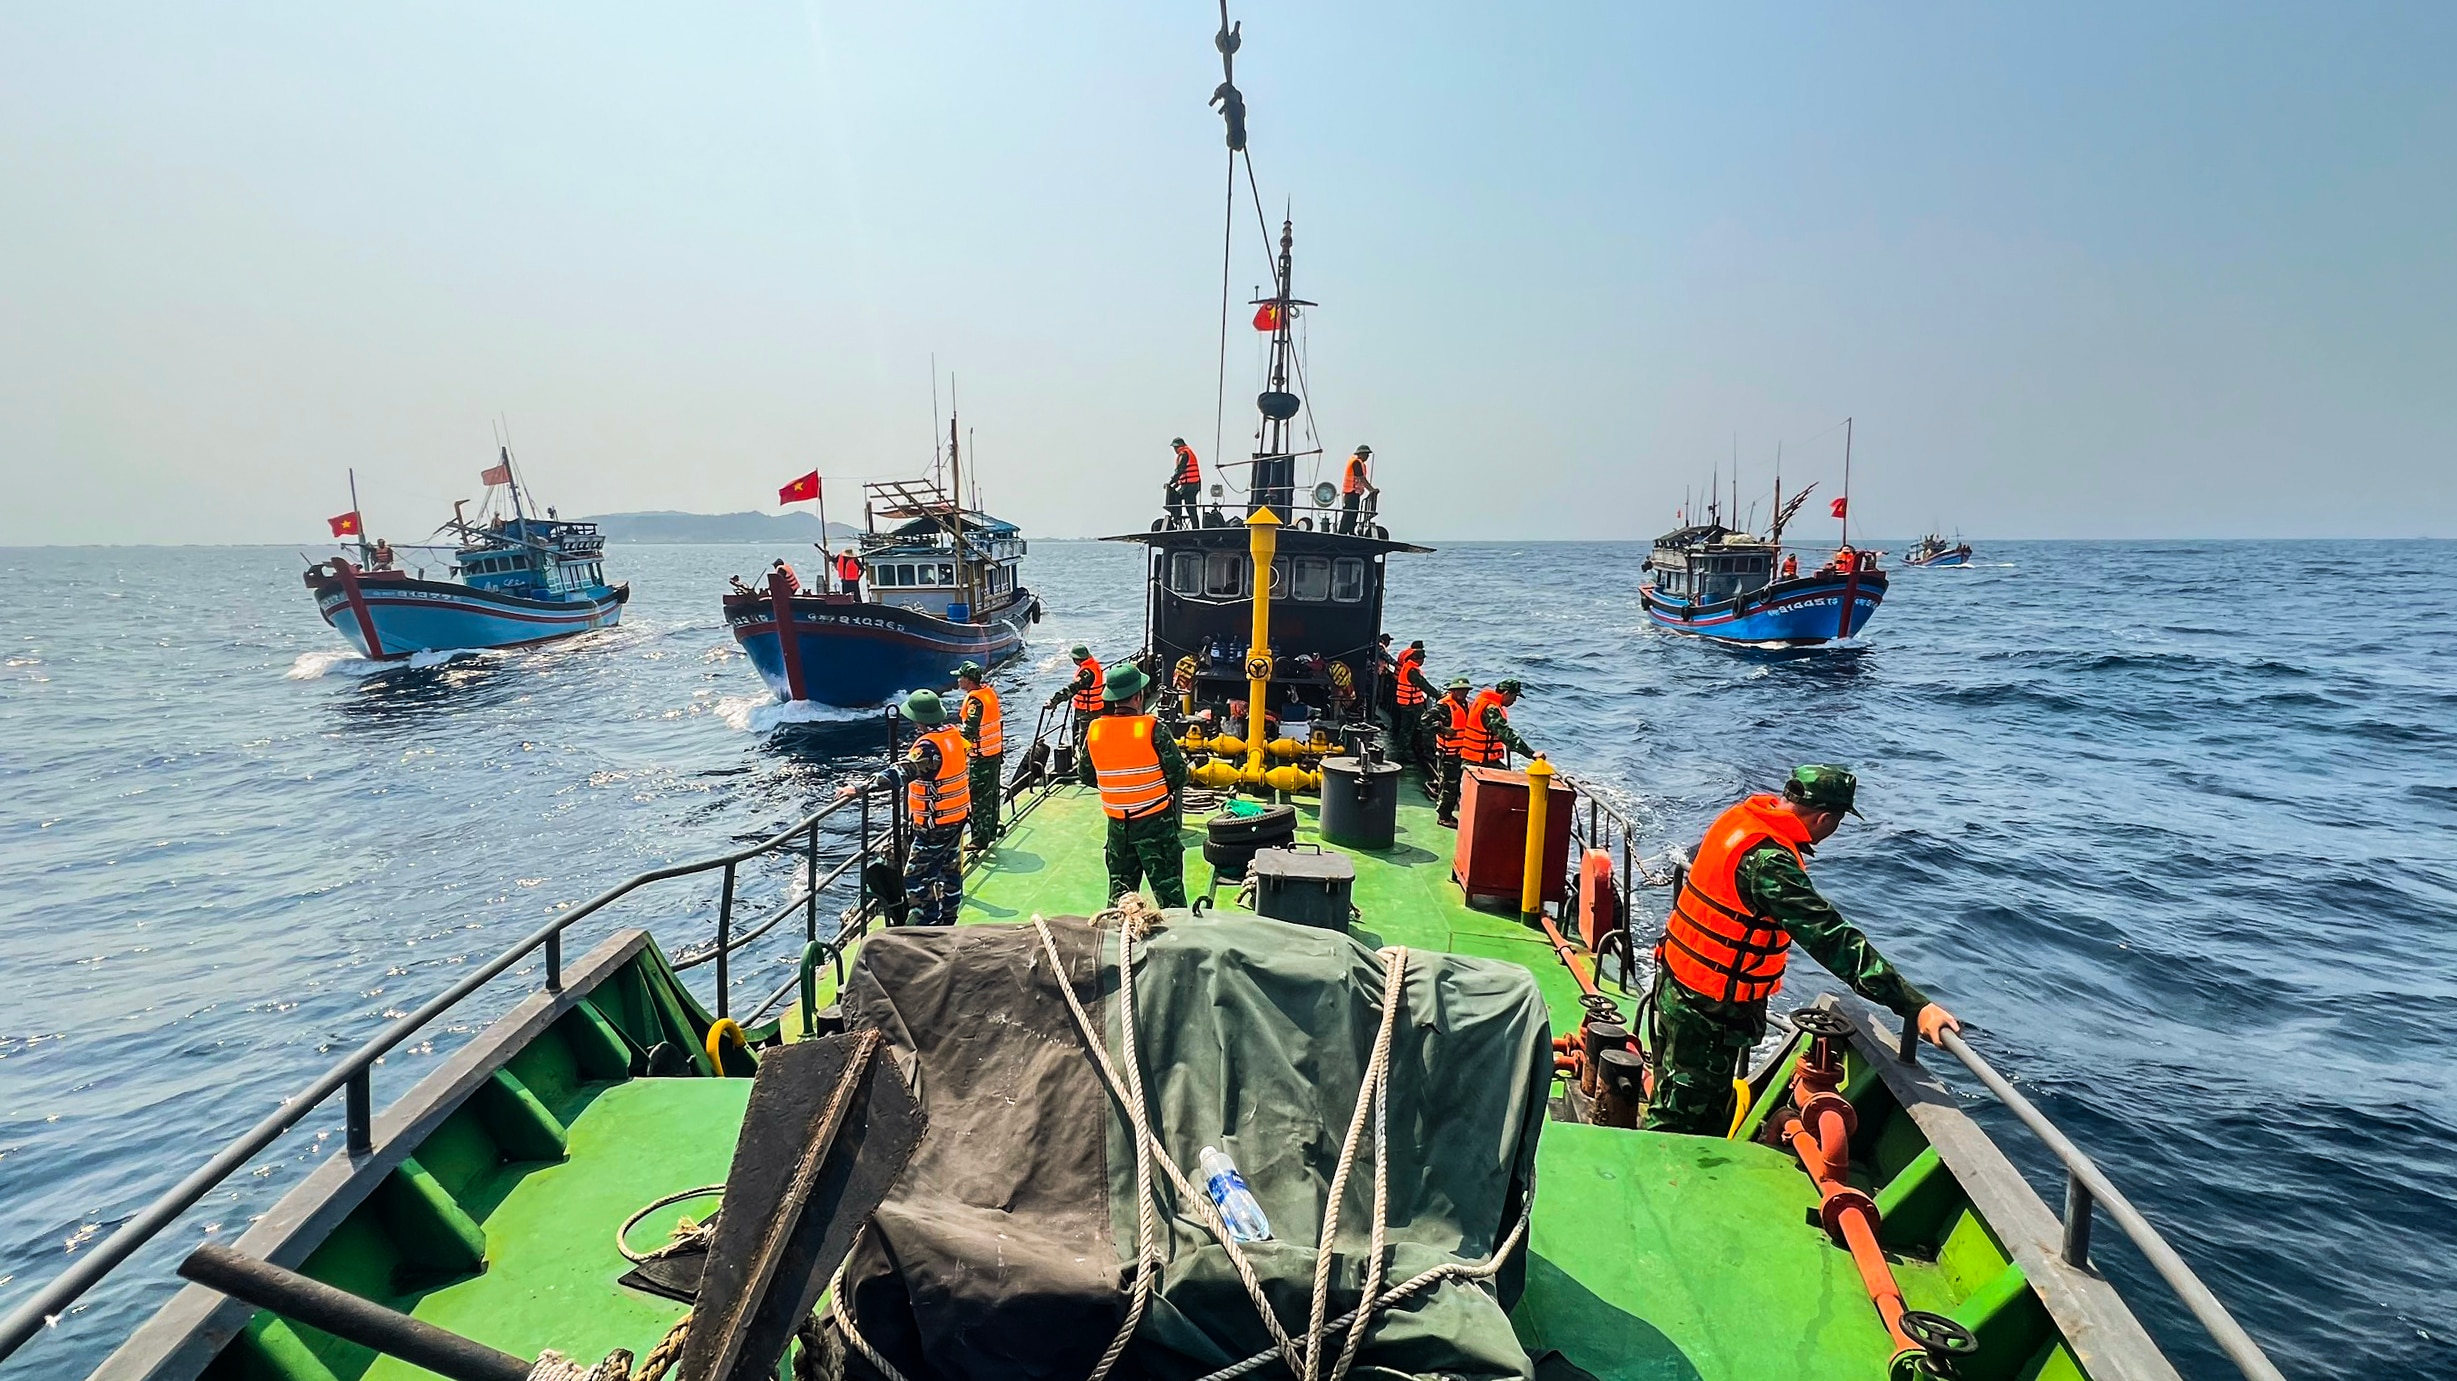 Lực lượng biên phòng Quảng Ngãi cùng tàu cá ngư dân tìm kiếm các nạn nhân mất tích trong vụ tai nạn tàu kéo sà lan bị chìm ở vùng biển Lý Sơn